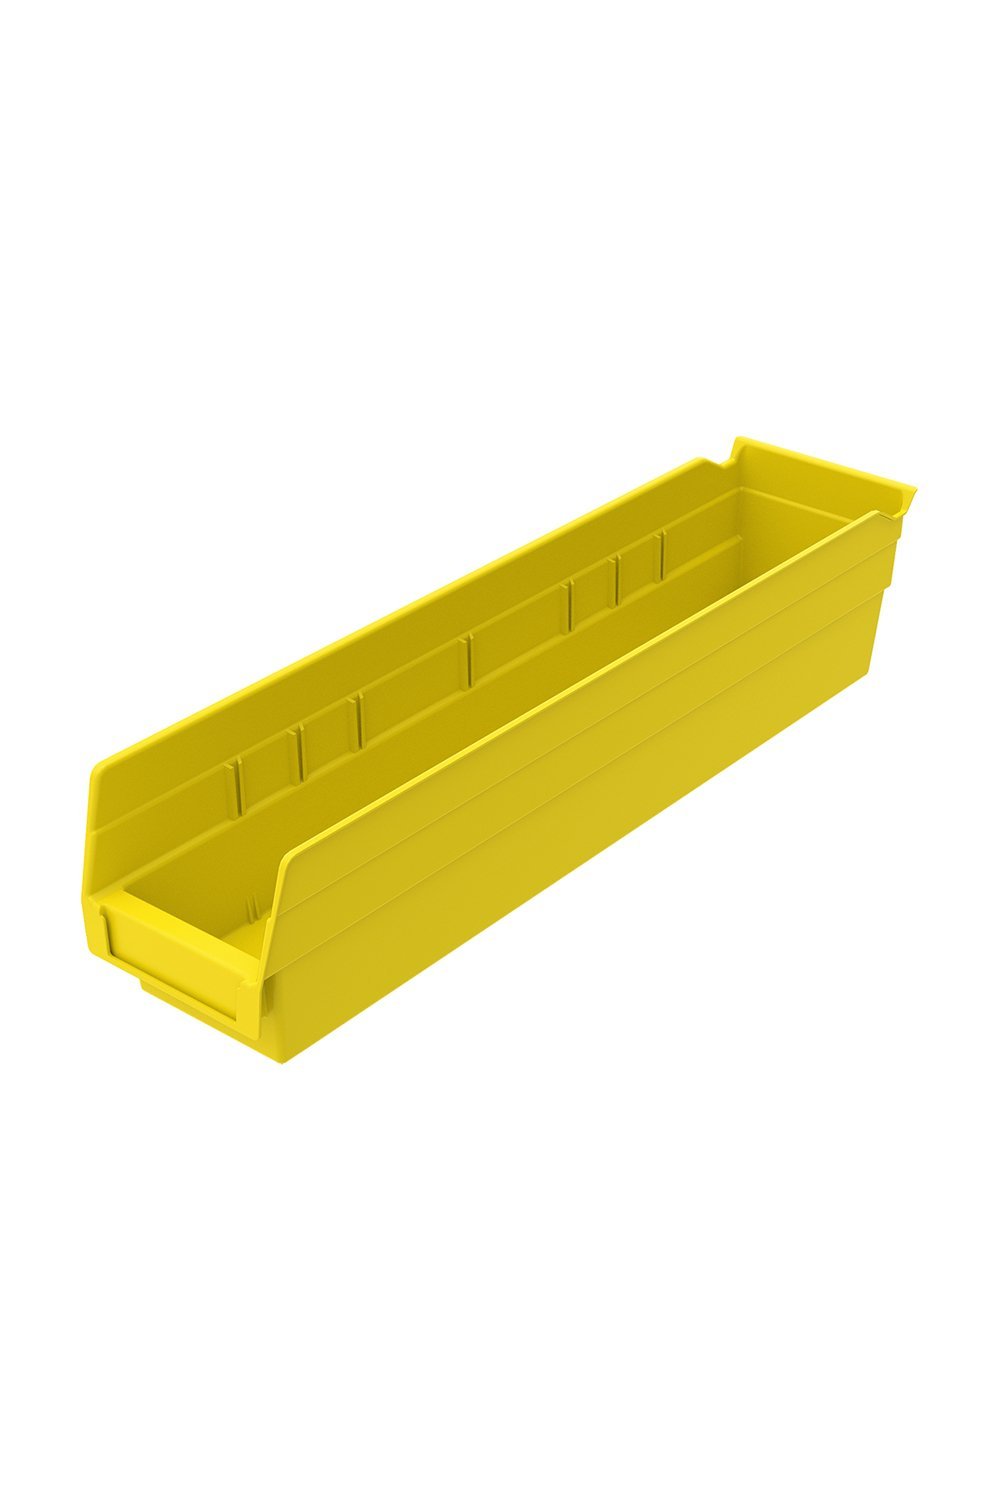 Shelf Bin for 18"D Shelves Bins & Containers Acart 17-7/8'' x 4-1/8'' x 4'' Yellow 